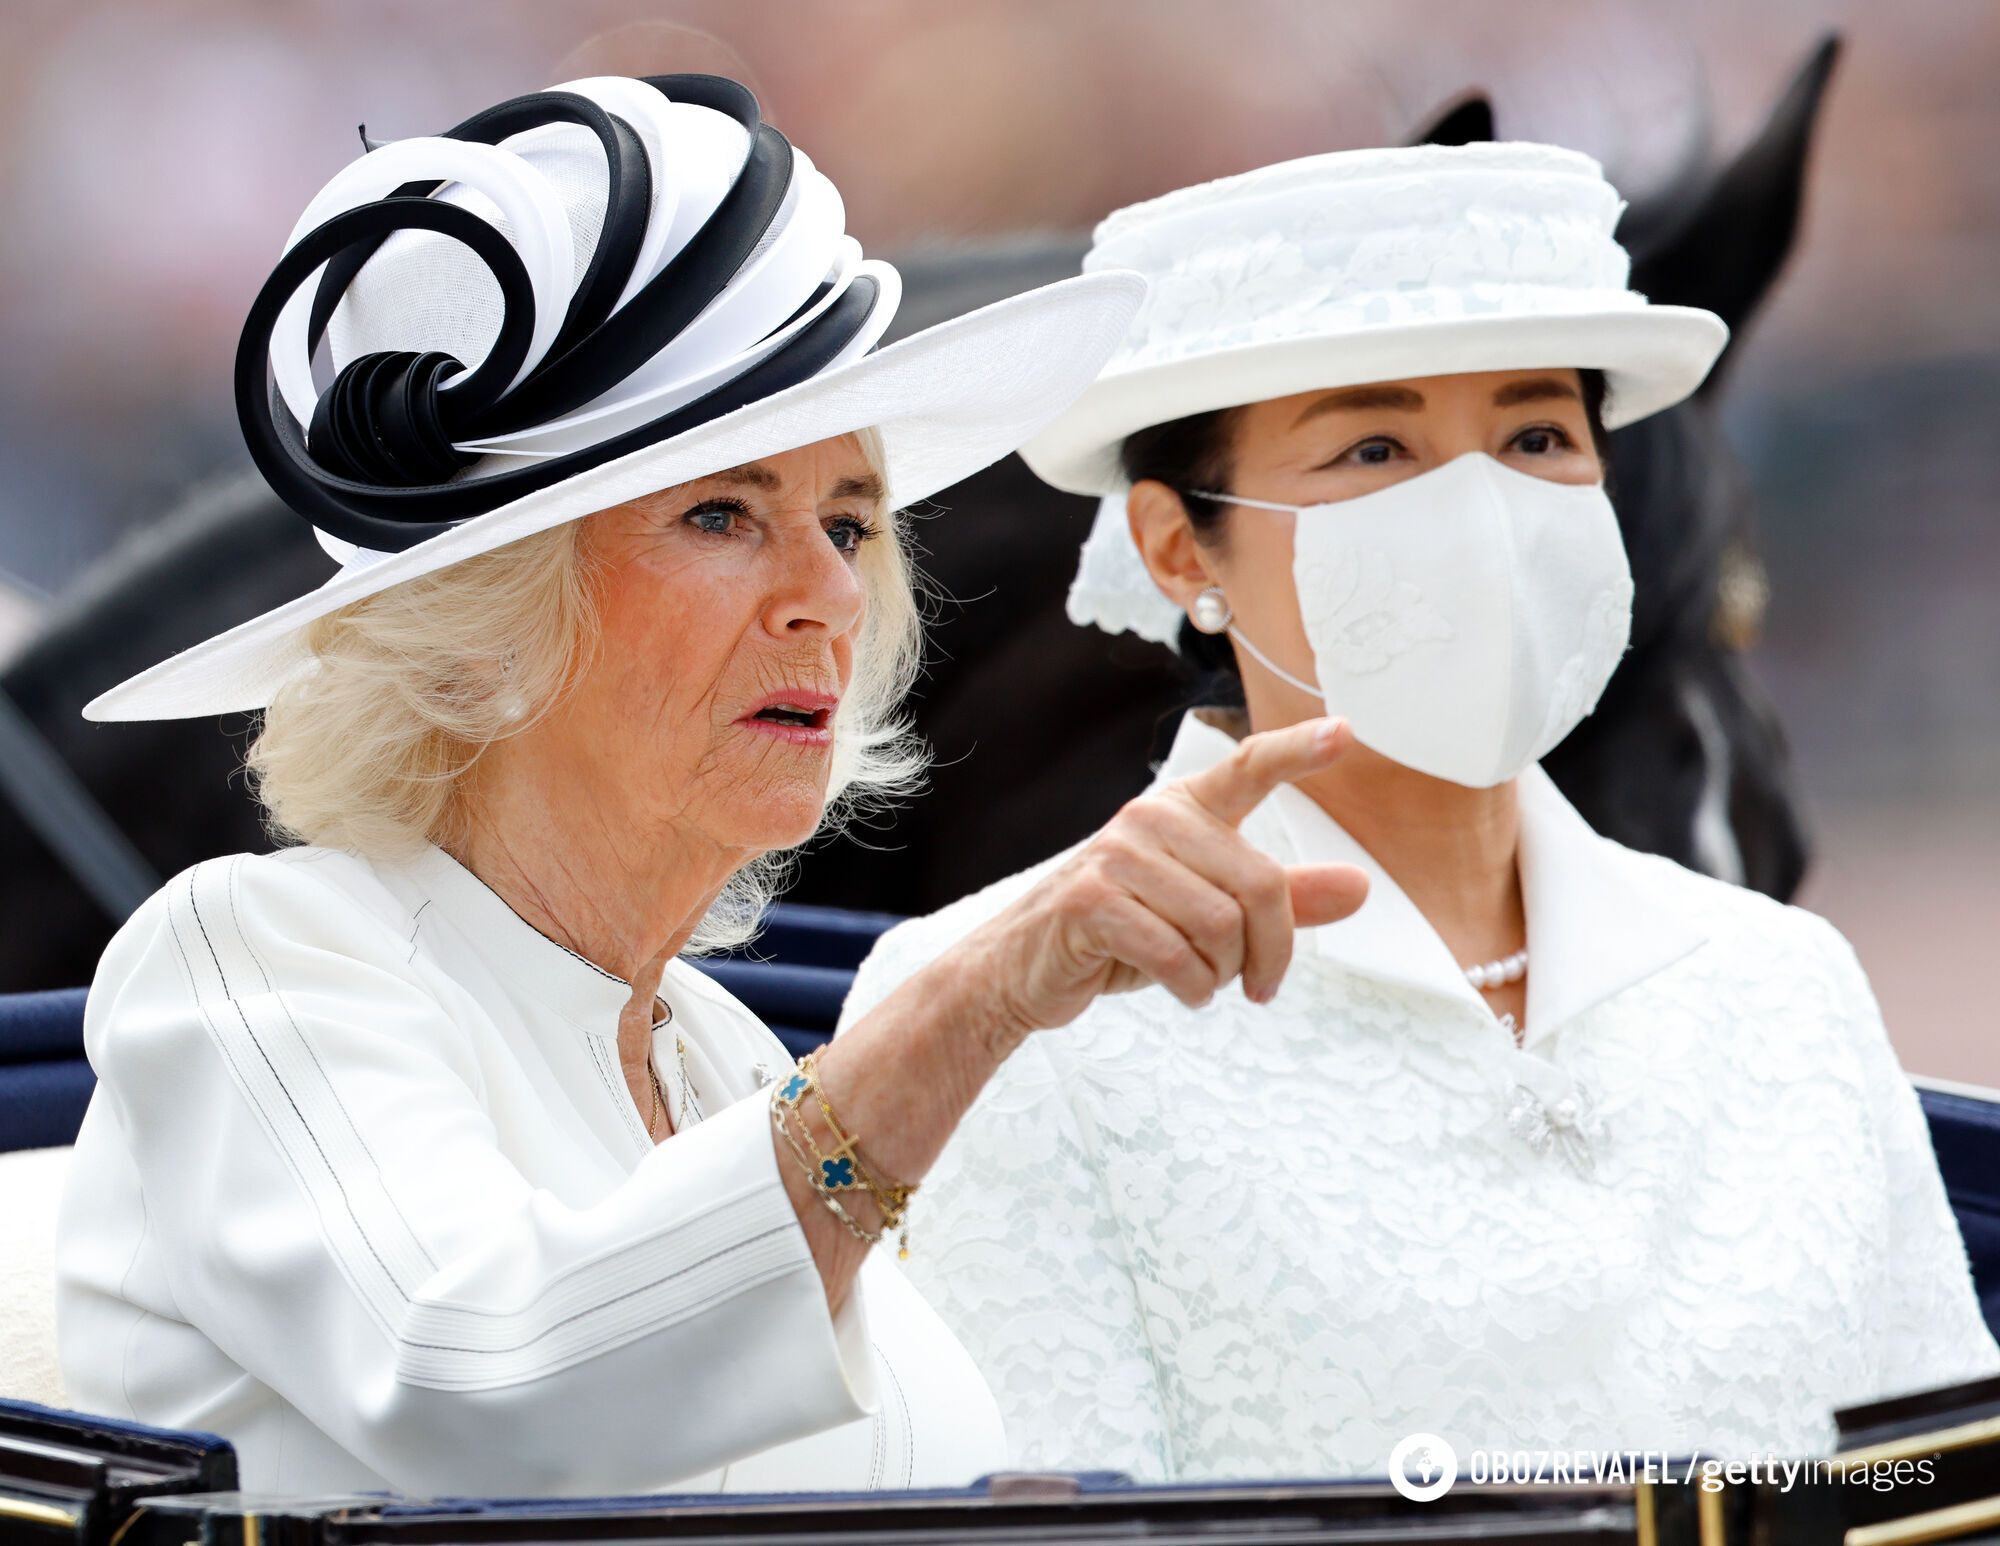 Ujawniono nieoczekiwany powód, dla którego cesarzowa Japonii nosiła maskę podczas spotkania z królową Camillą